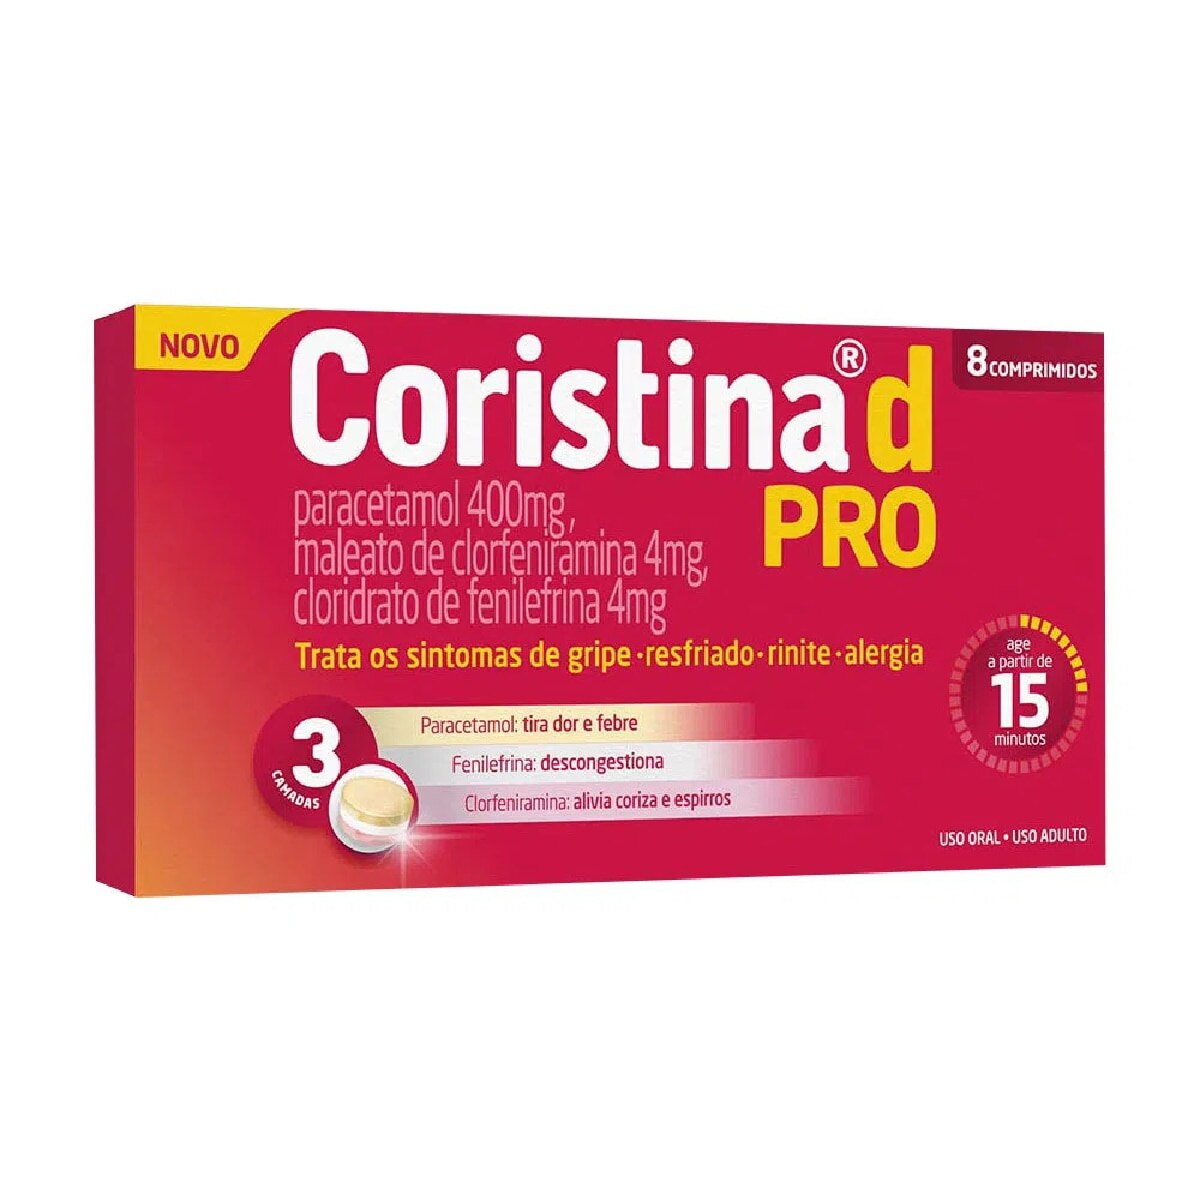 Coristina D Pro 8 Comprimidos